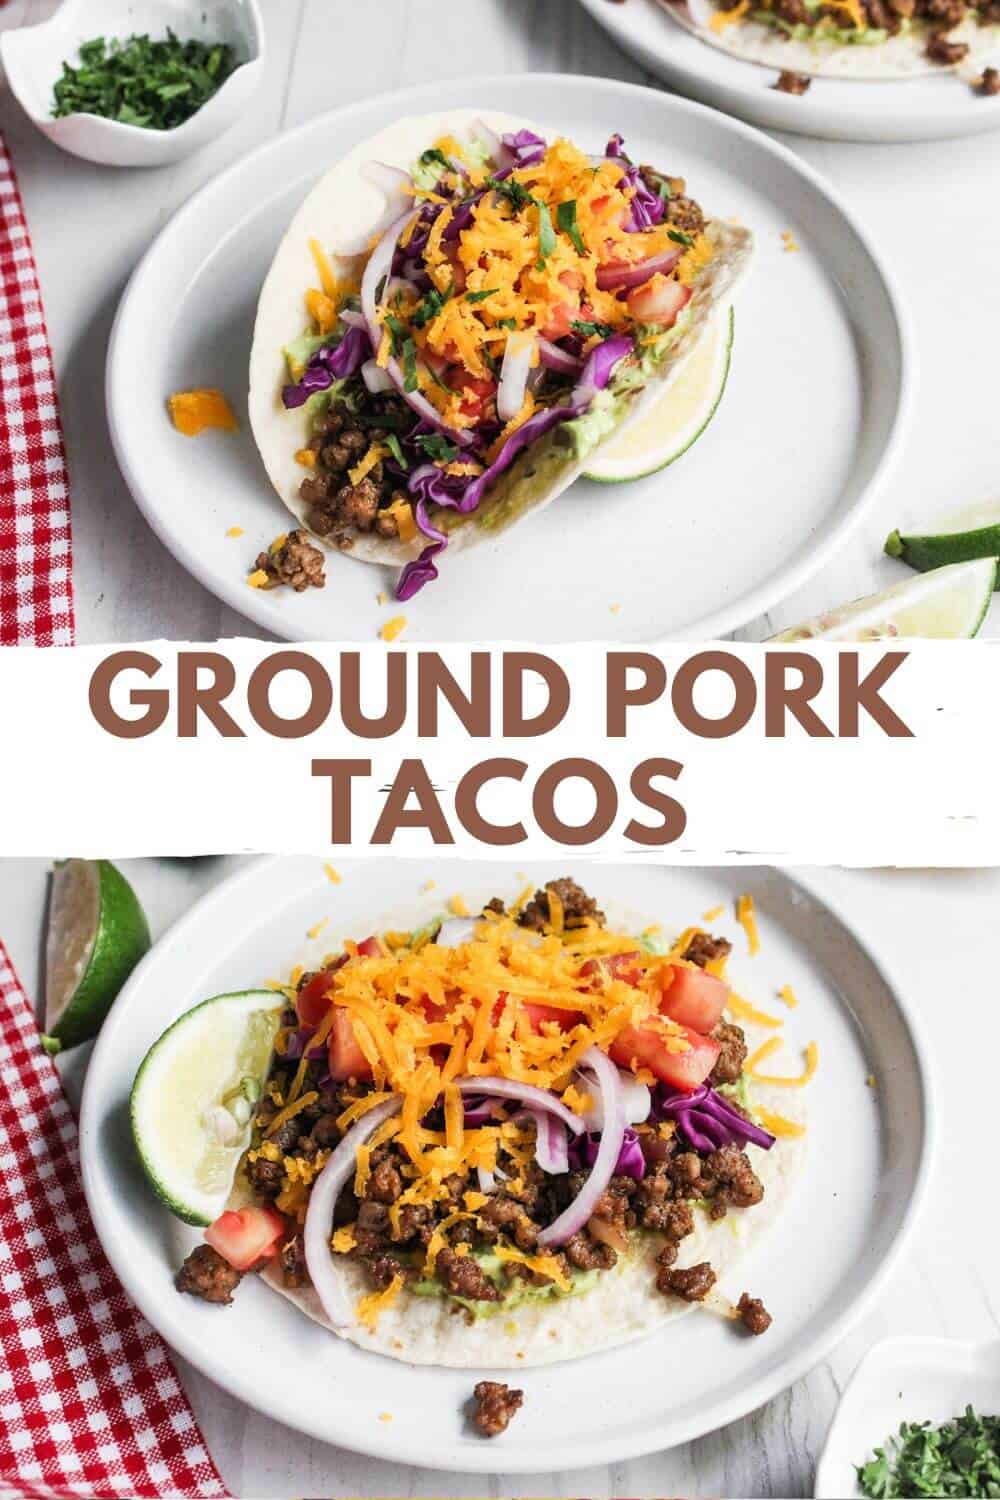 Delicious ground pork tacos on white plates.